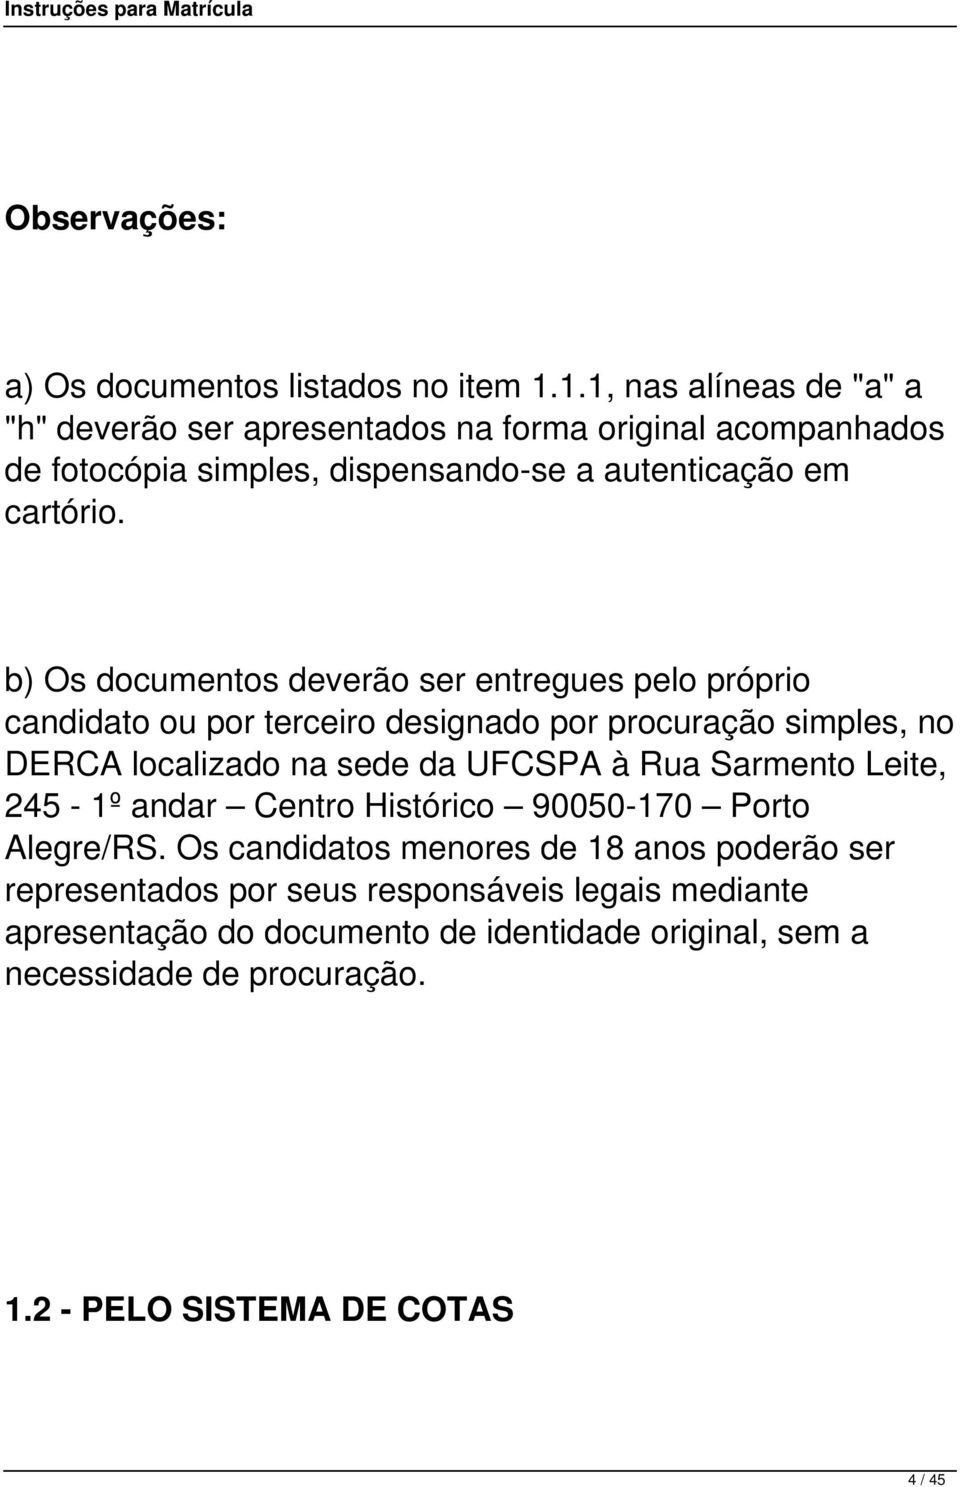 b) Os documentos deverão ser entregues pelo próprio candidato ou por terceiro designado por procuração simples, no DERCA localizado na sede da UFCSPA à Rua